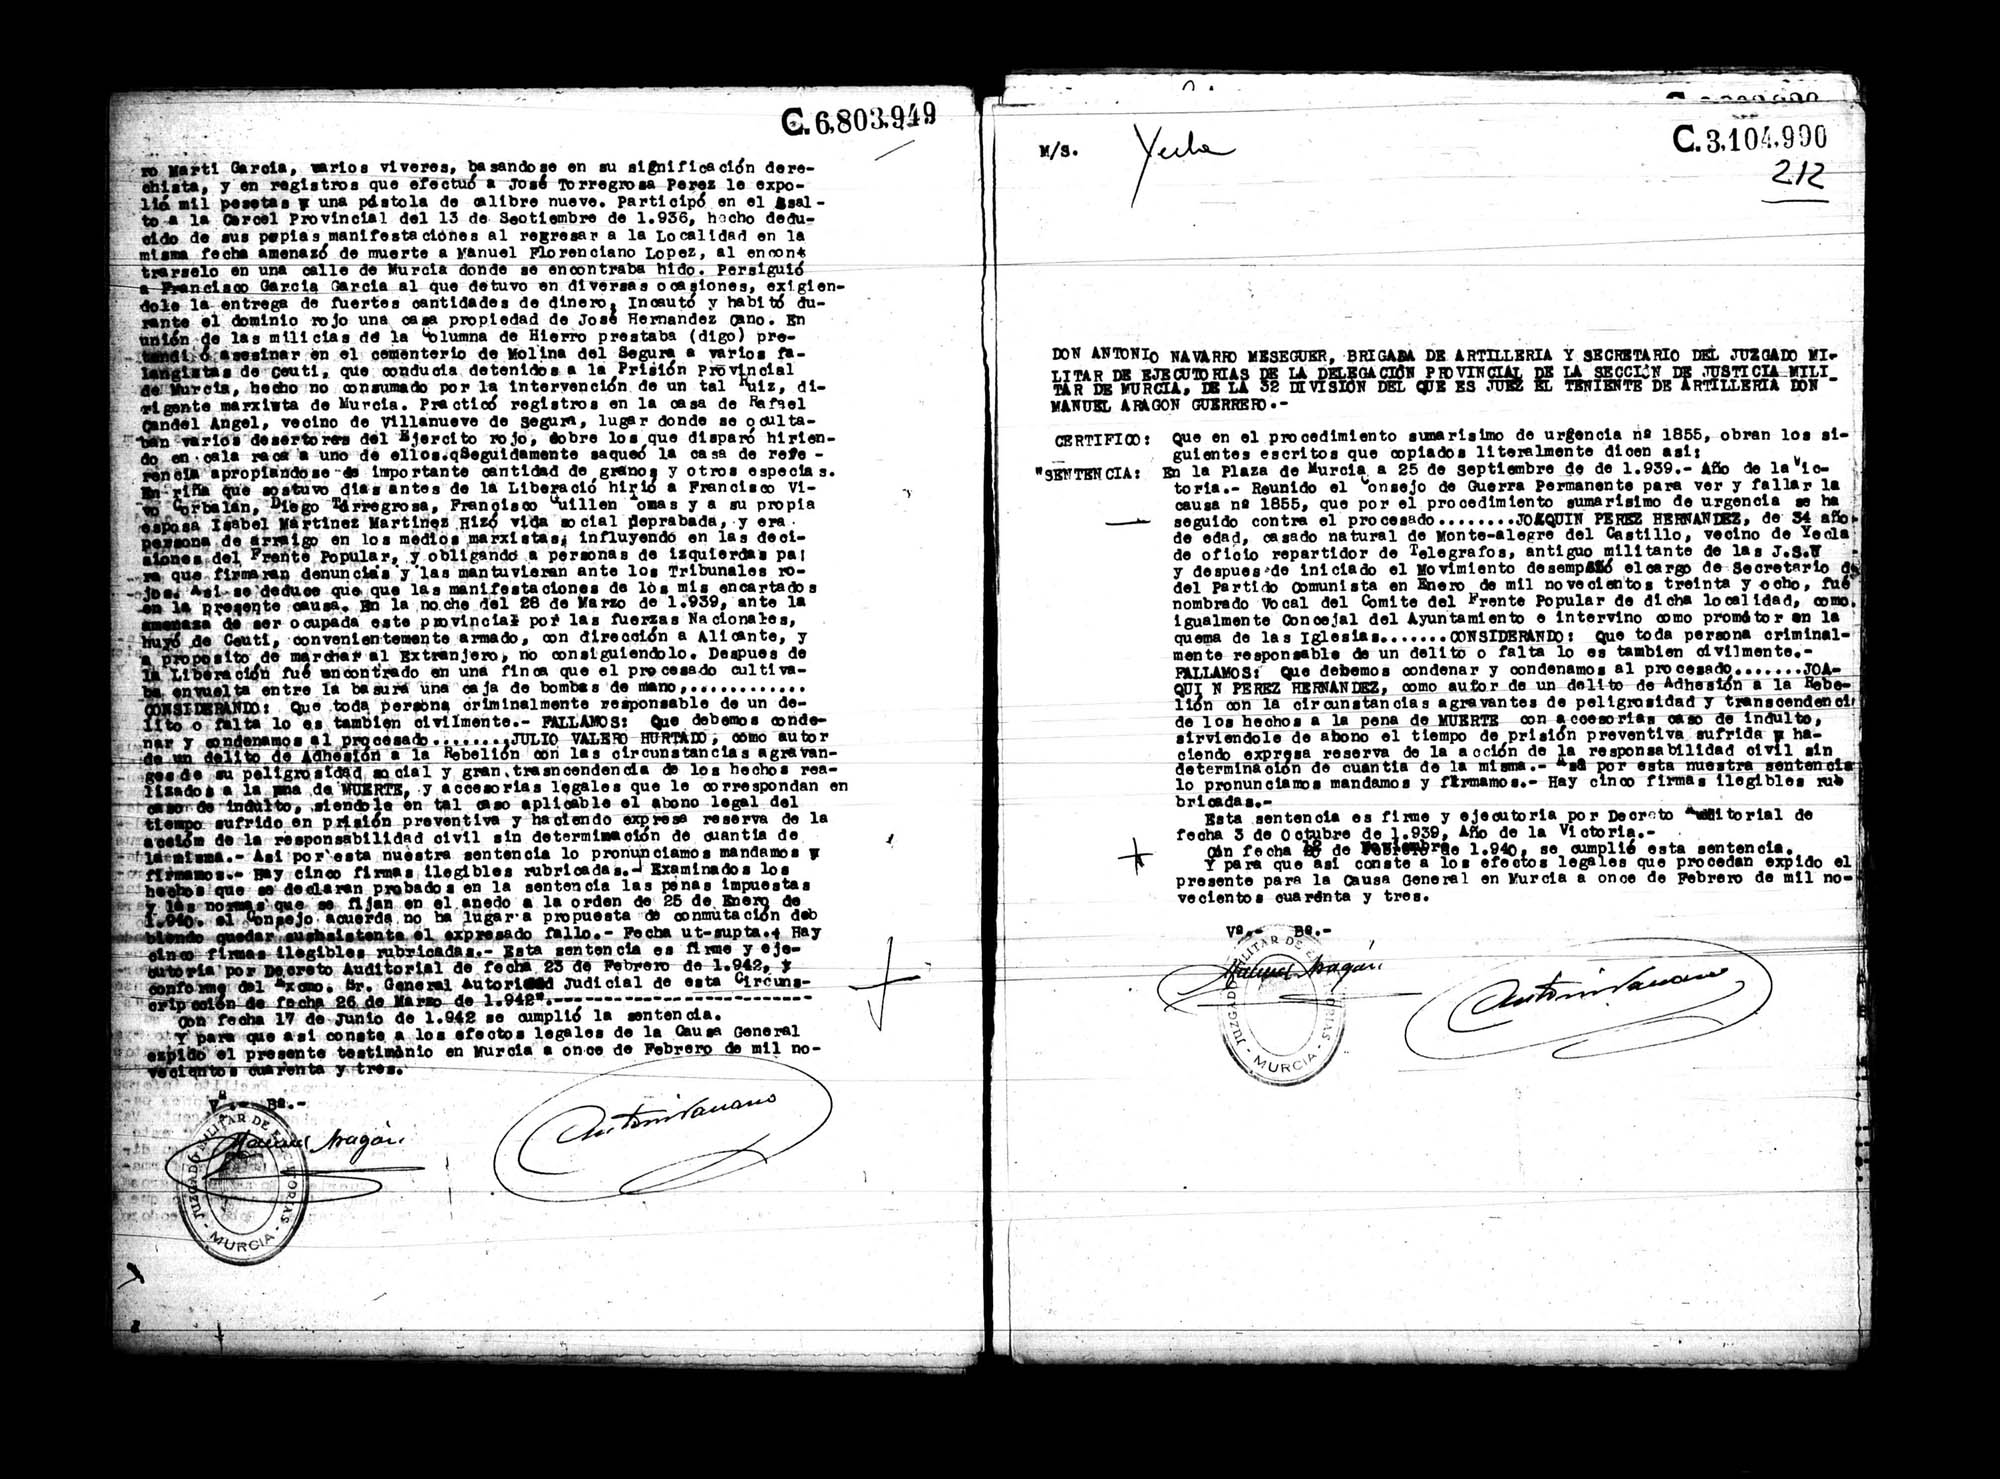 Certificado de la sentencia pronunciada contra Julio Valero Hurtado,  causa 7105, el 7 de noviembre de 1941 en Murcia.